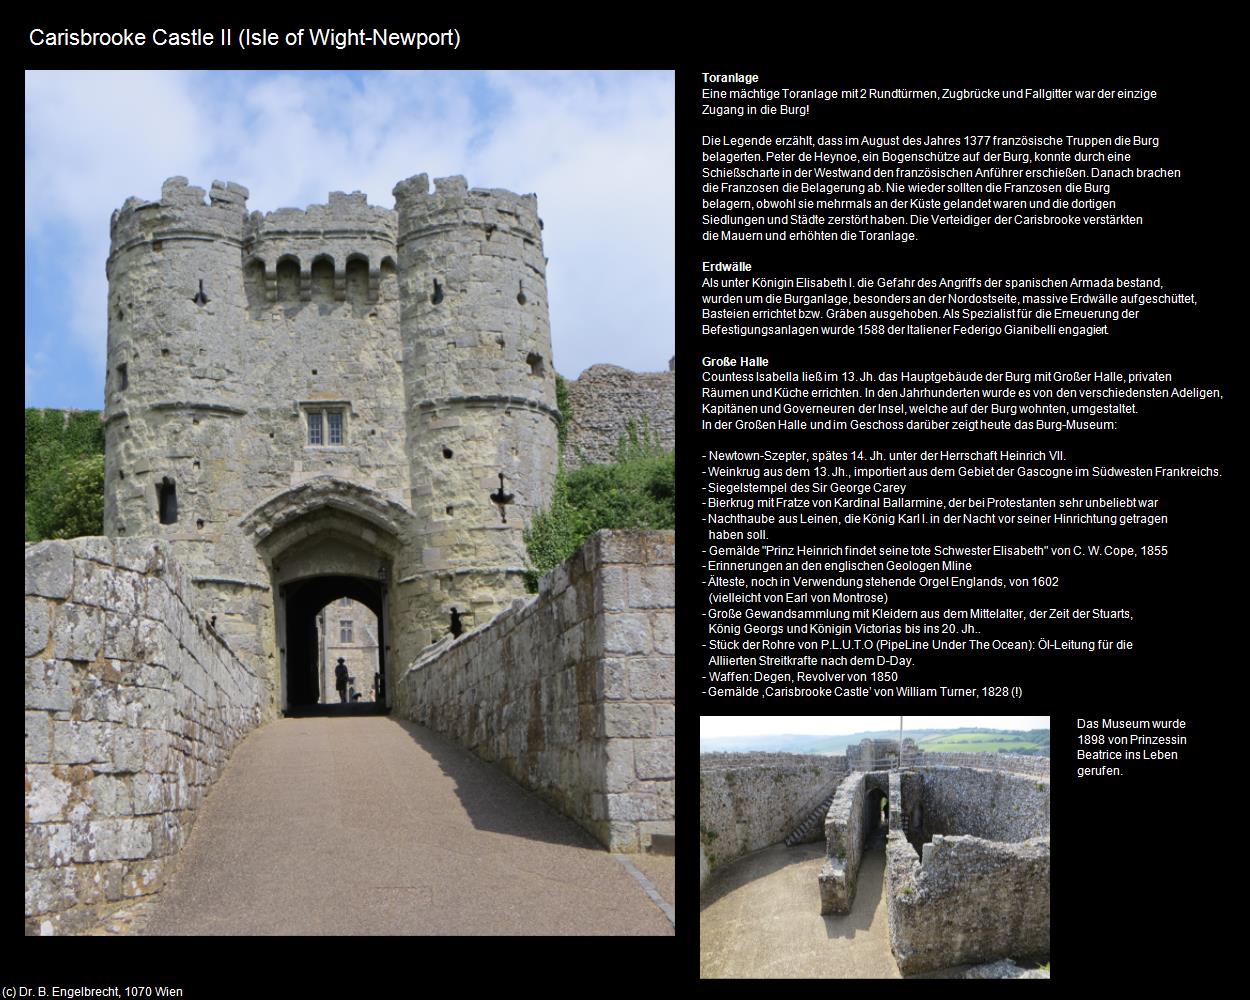 Carisbrooke Castle II (Newport) (Isle of Wight) in Kulturatlas-ENGLAND und WALES